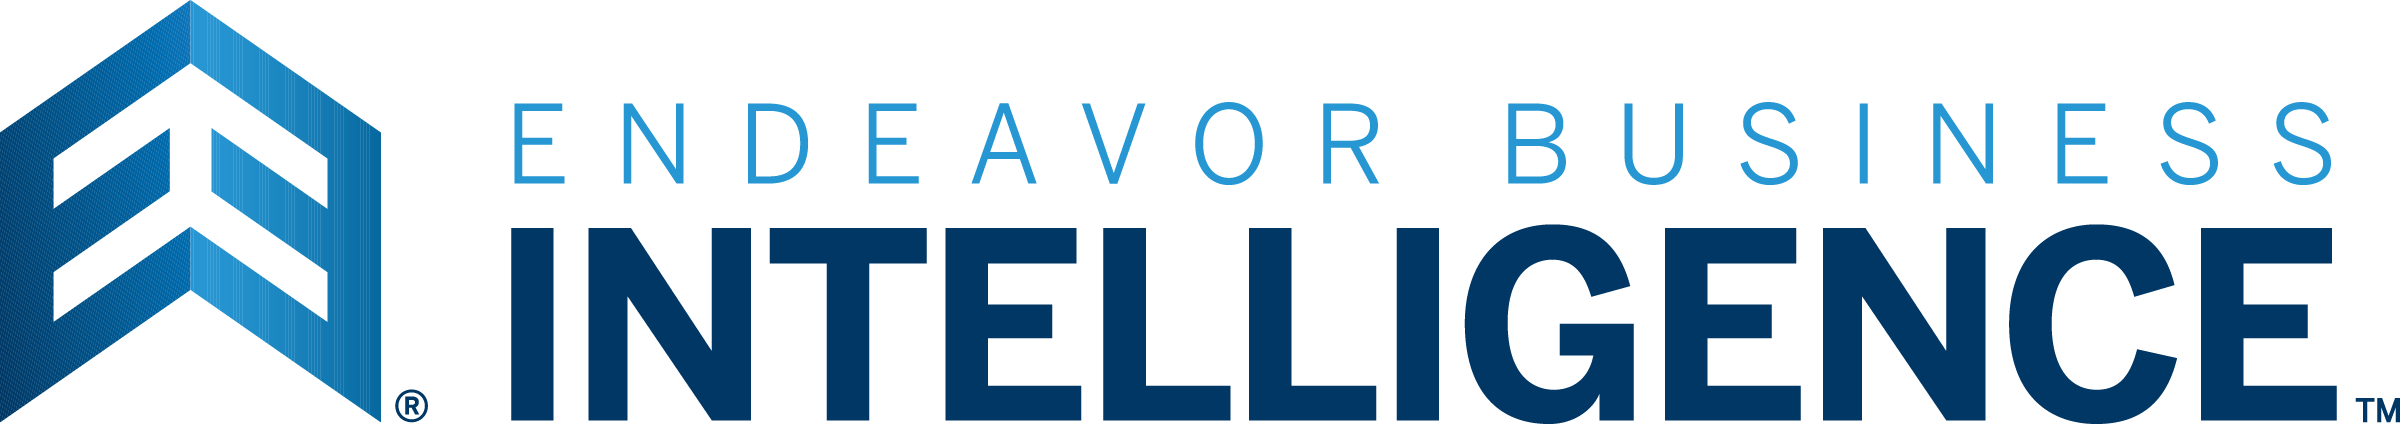 endeavor business media logo